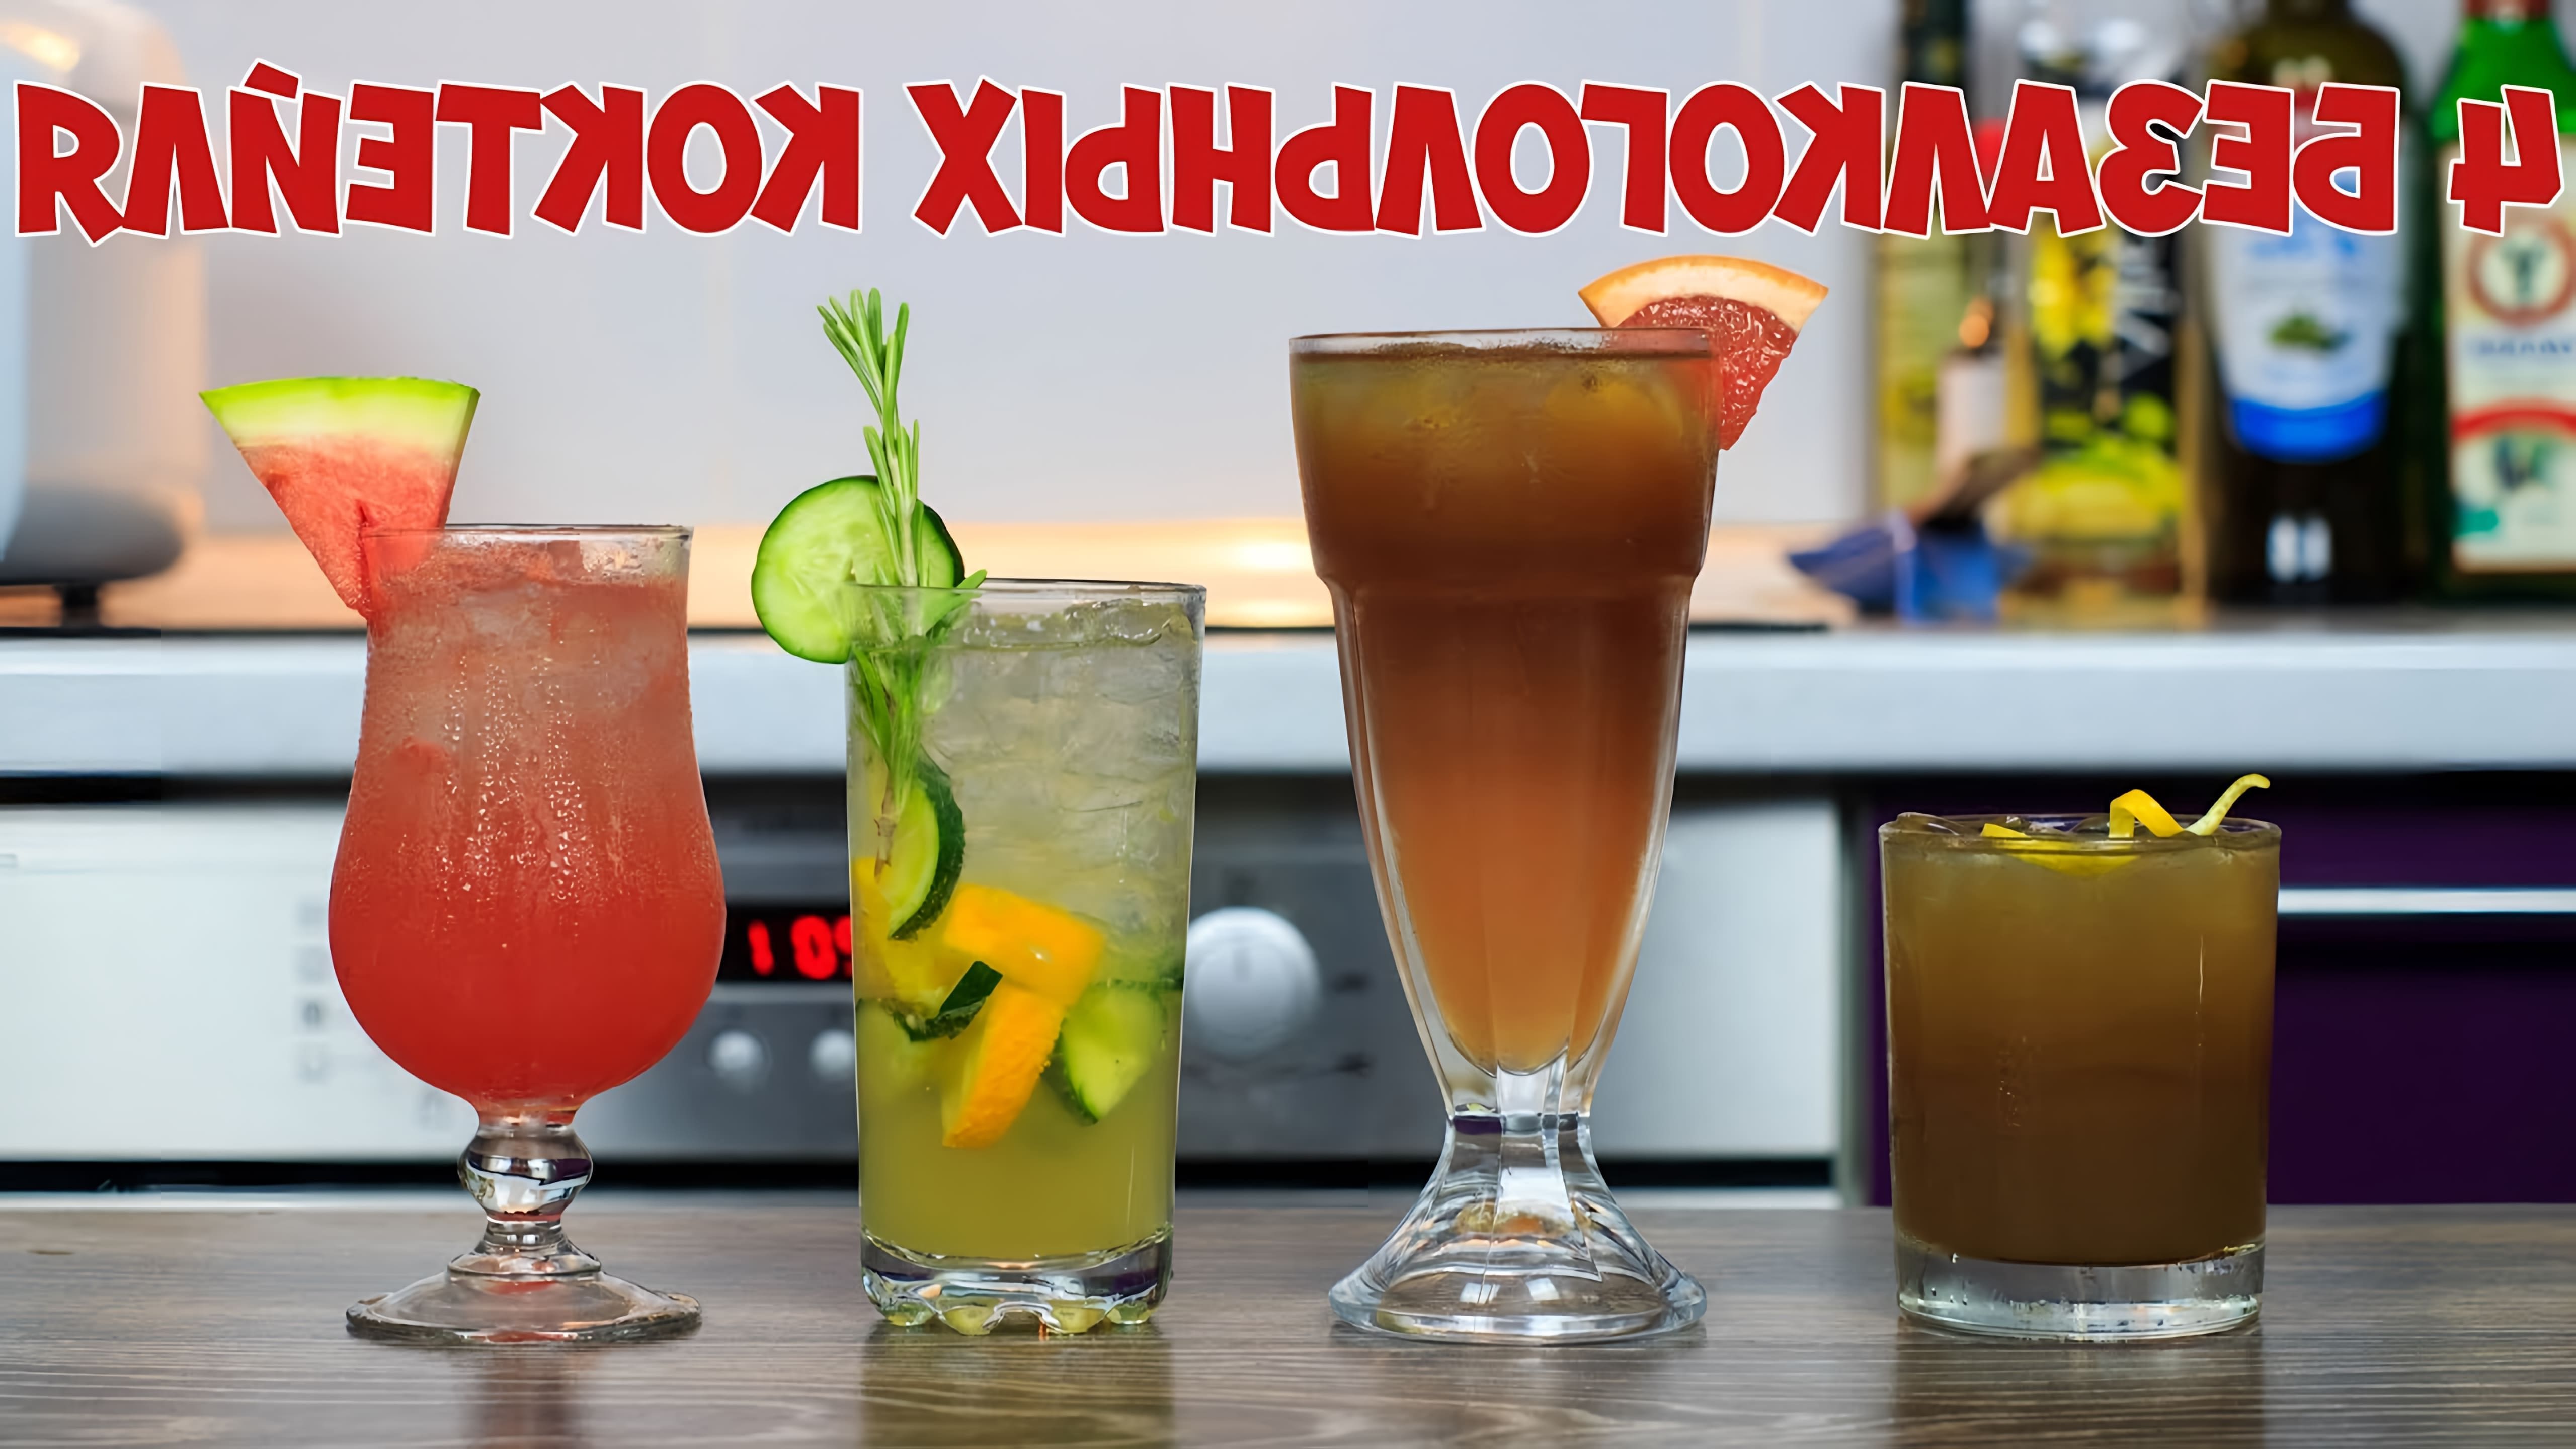 В этом видео показаны четыре безалкогольных коктейля: коктейль Атланта, арбузный слинг, огуречный лимонад и грейпфрутовый China